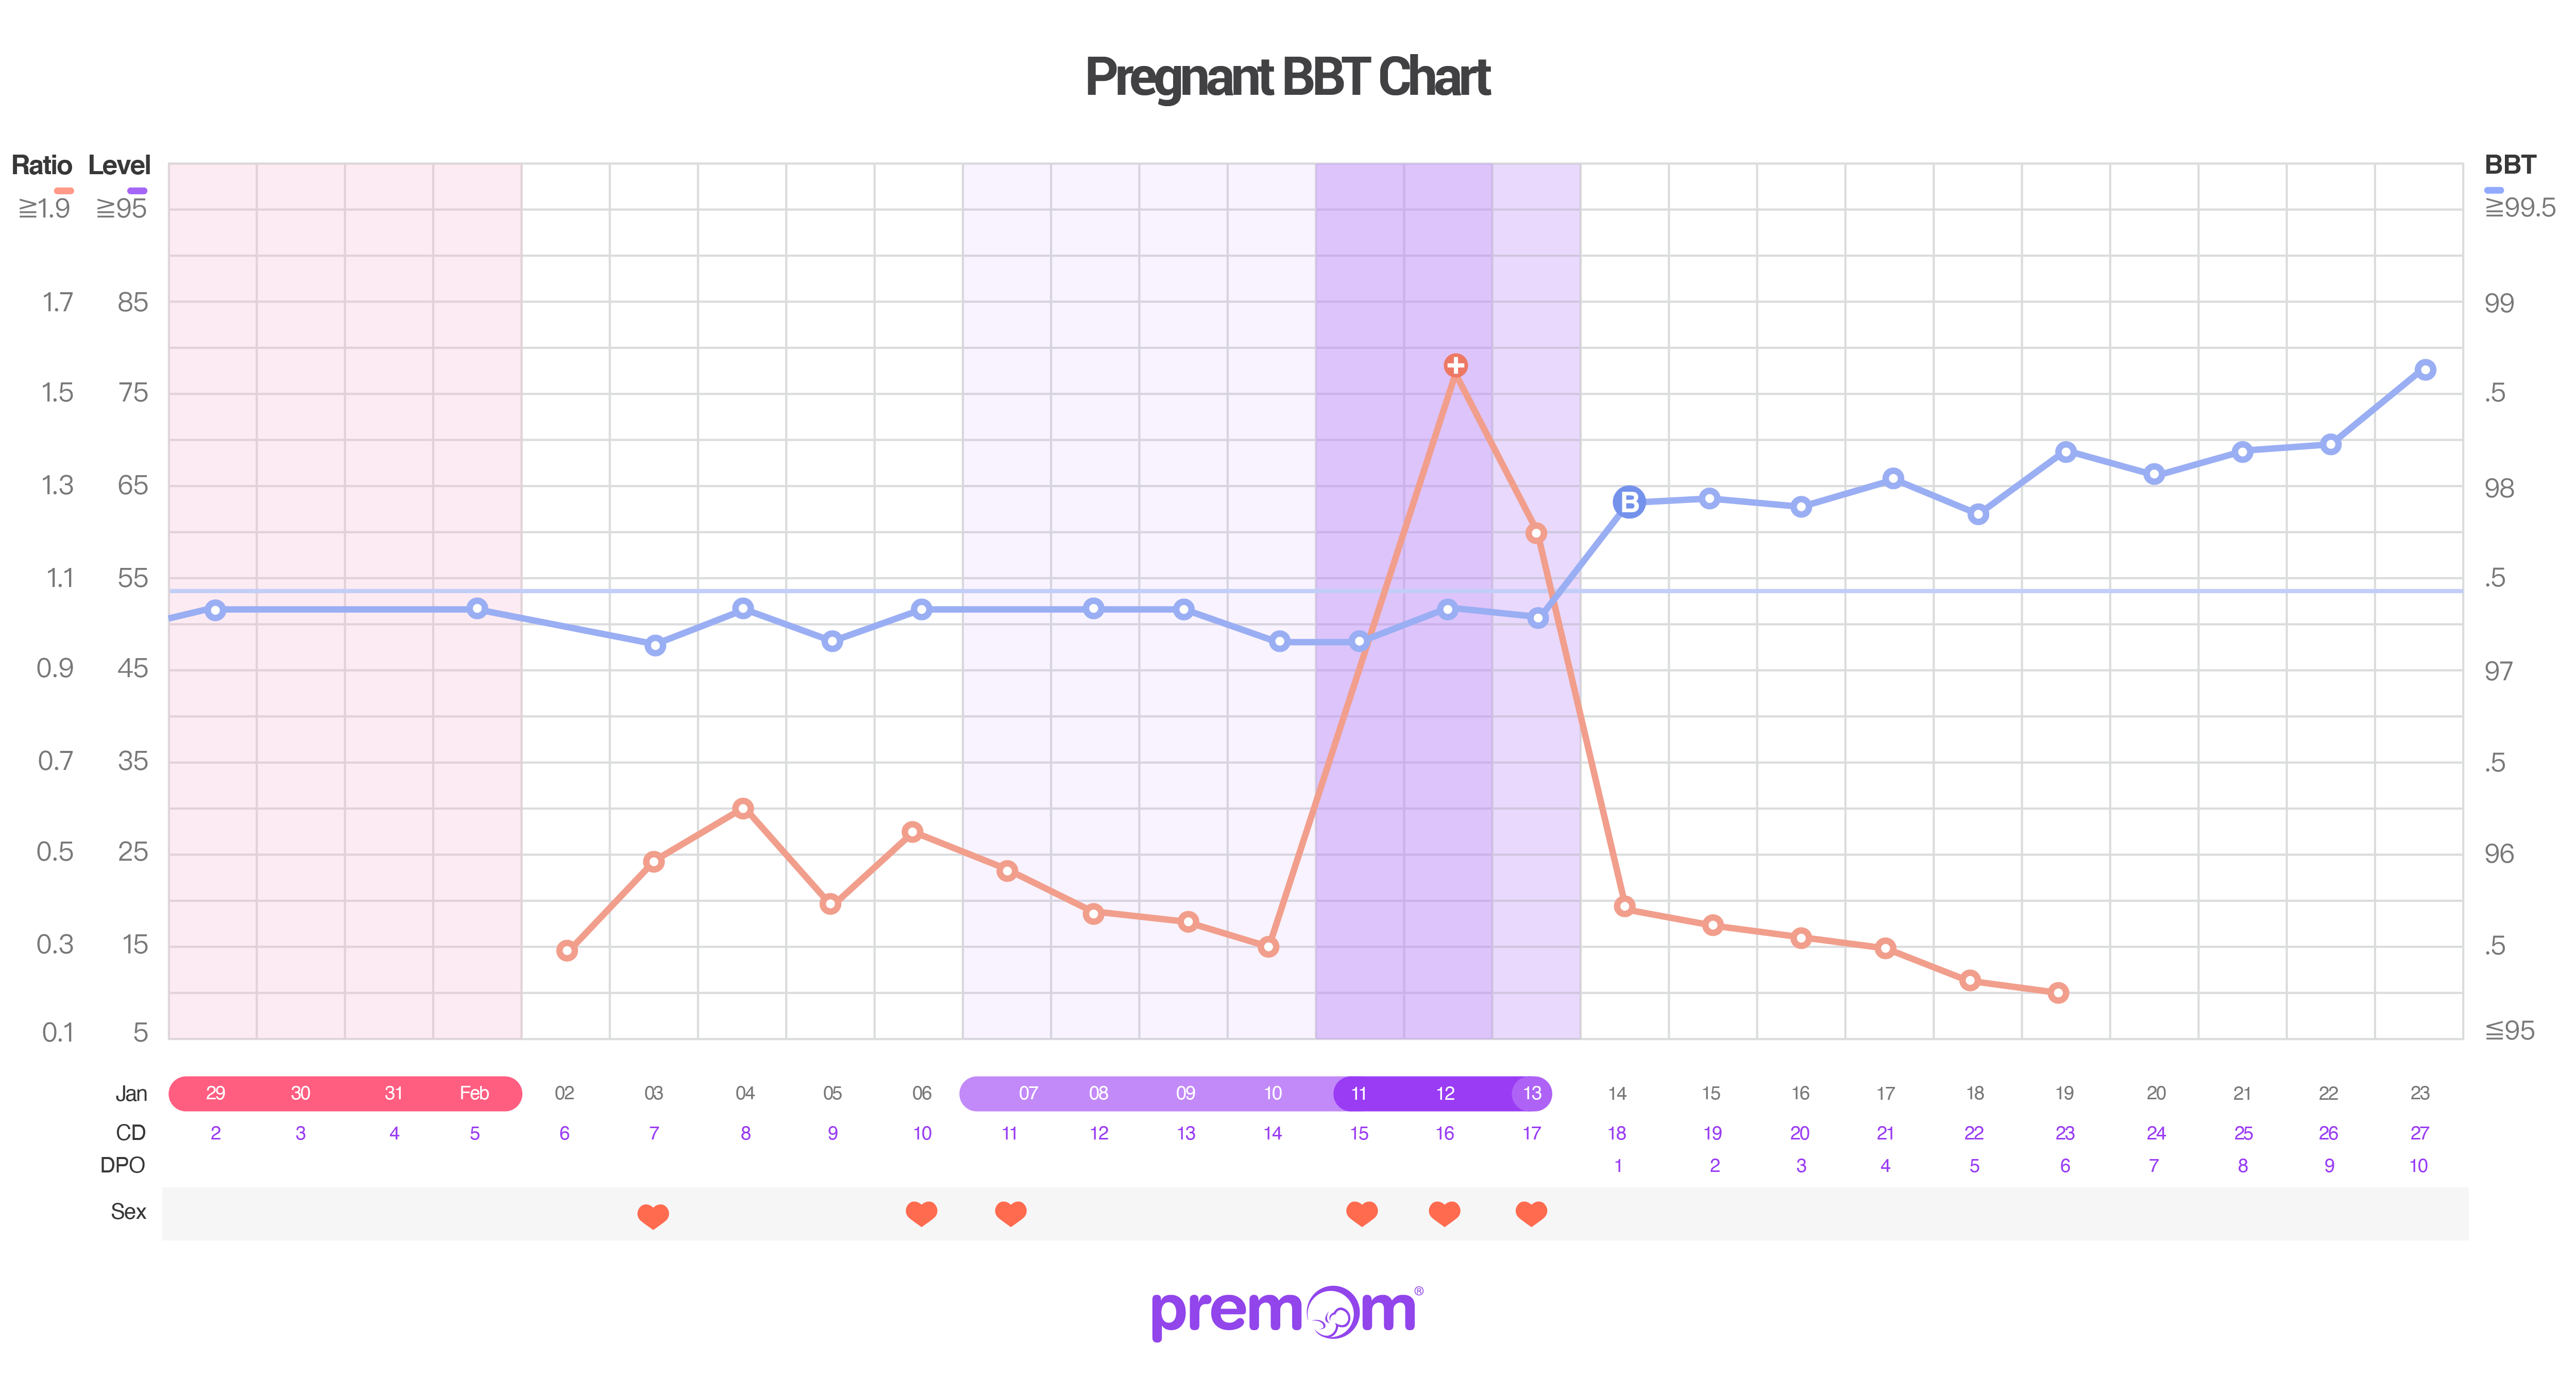 BBT chart when pregnant